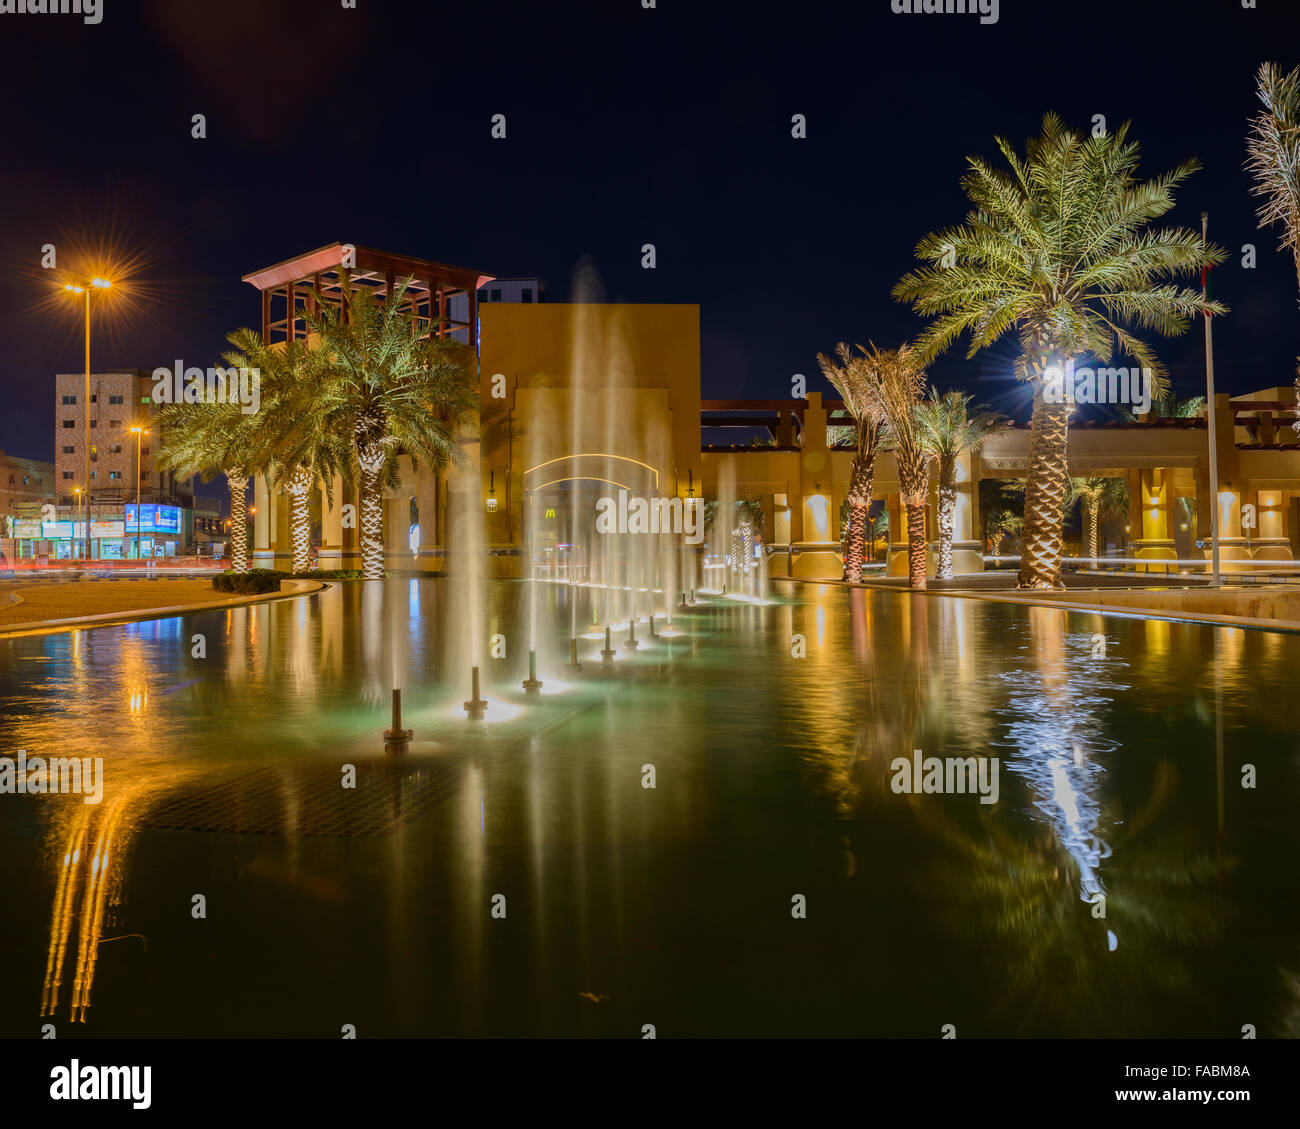 Fontaines d'affichage à l'entrée d'Al-Kout Mall, Kuwait, Koweït Banque D'Images